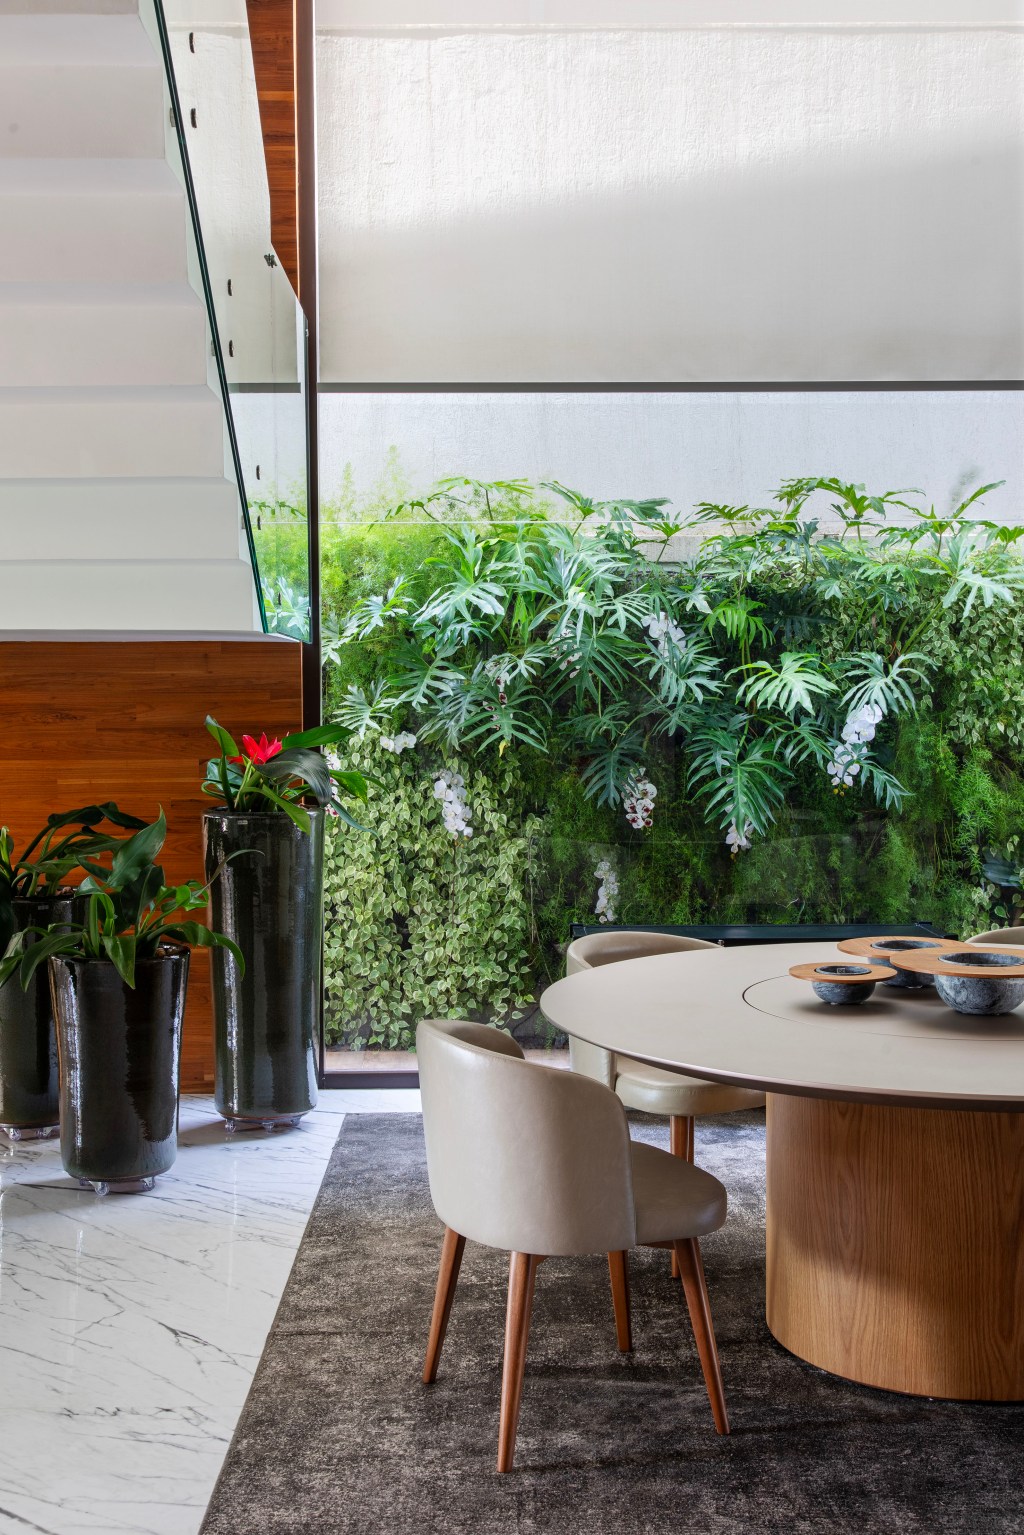 Jardim tropical traz mix de folhagens, texturas e vegetação. Projeto de Horto Girassol. Na foto, sala de jantar com parede verde, mesa redonda e cadeiras.